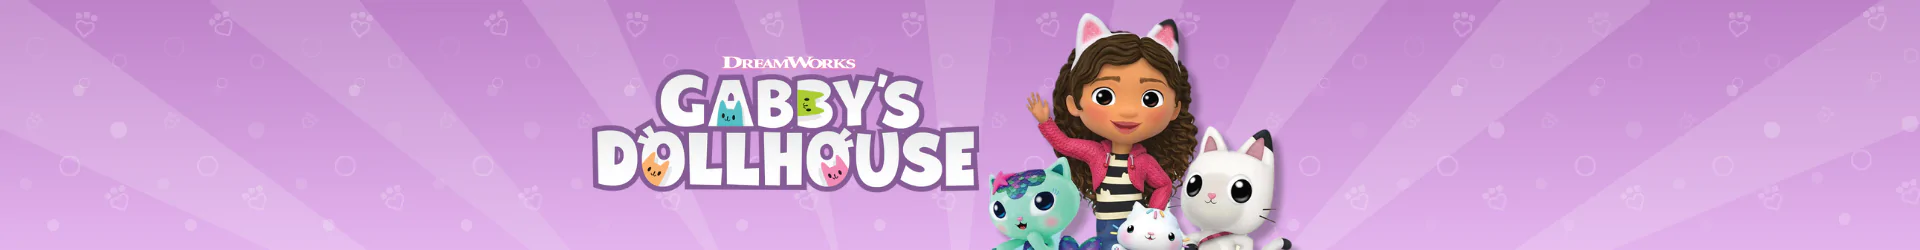 Gabbys Dollhouse Produkte banner